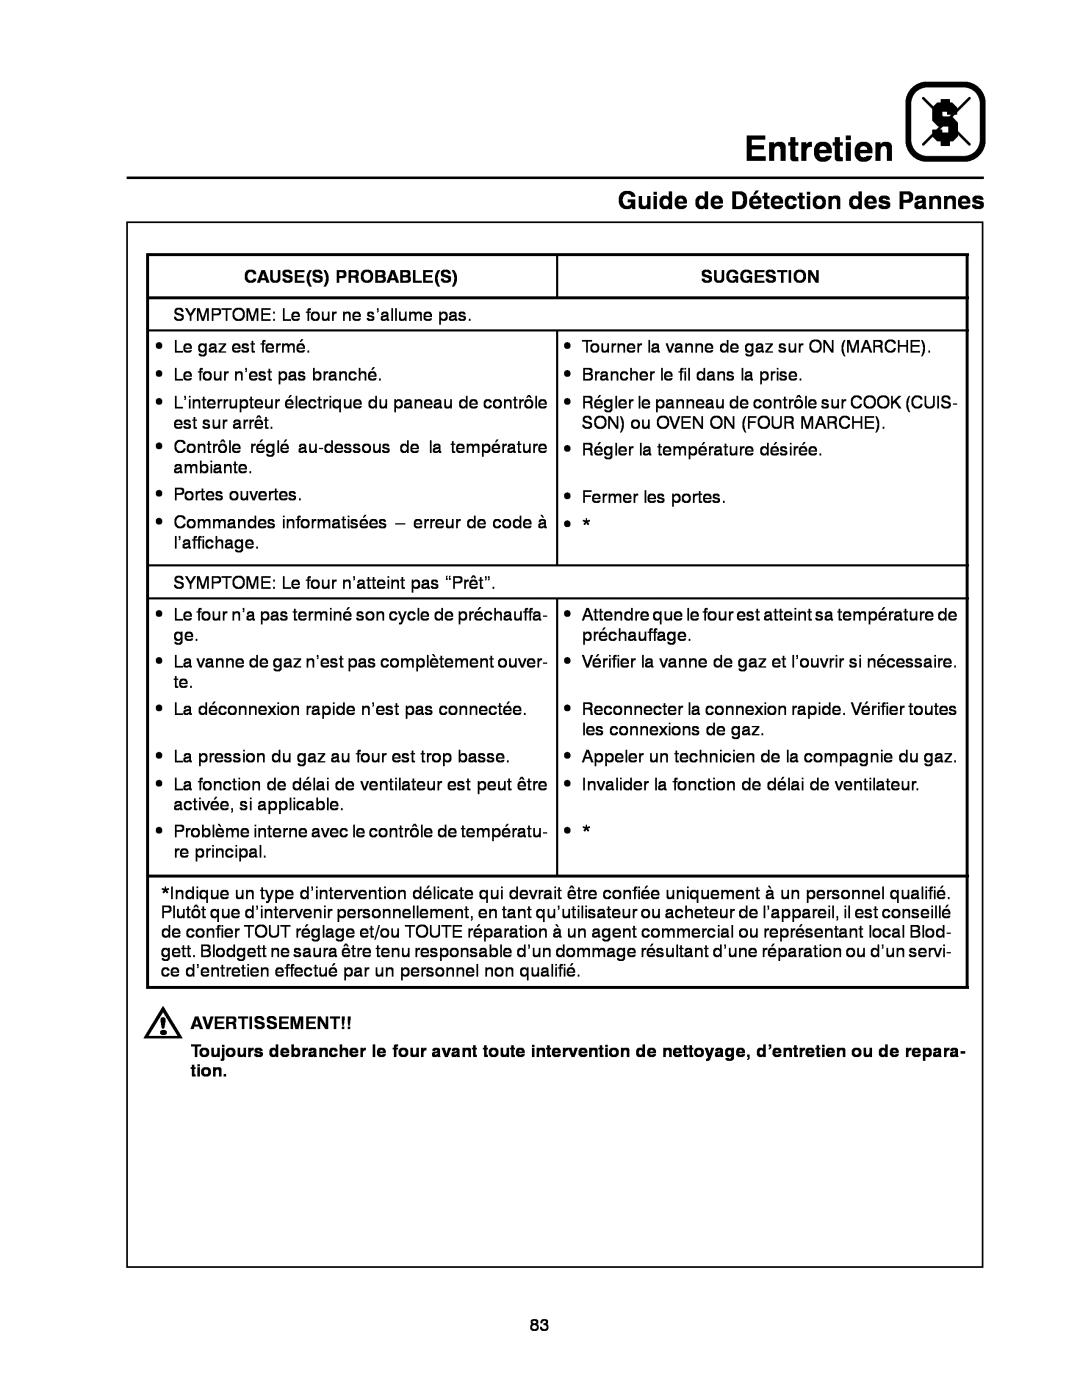 Blodgett DFG-50 manual Guide de Détection des Pannes, Entretien 